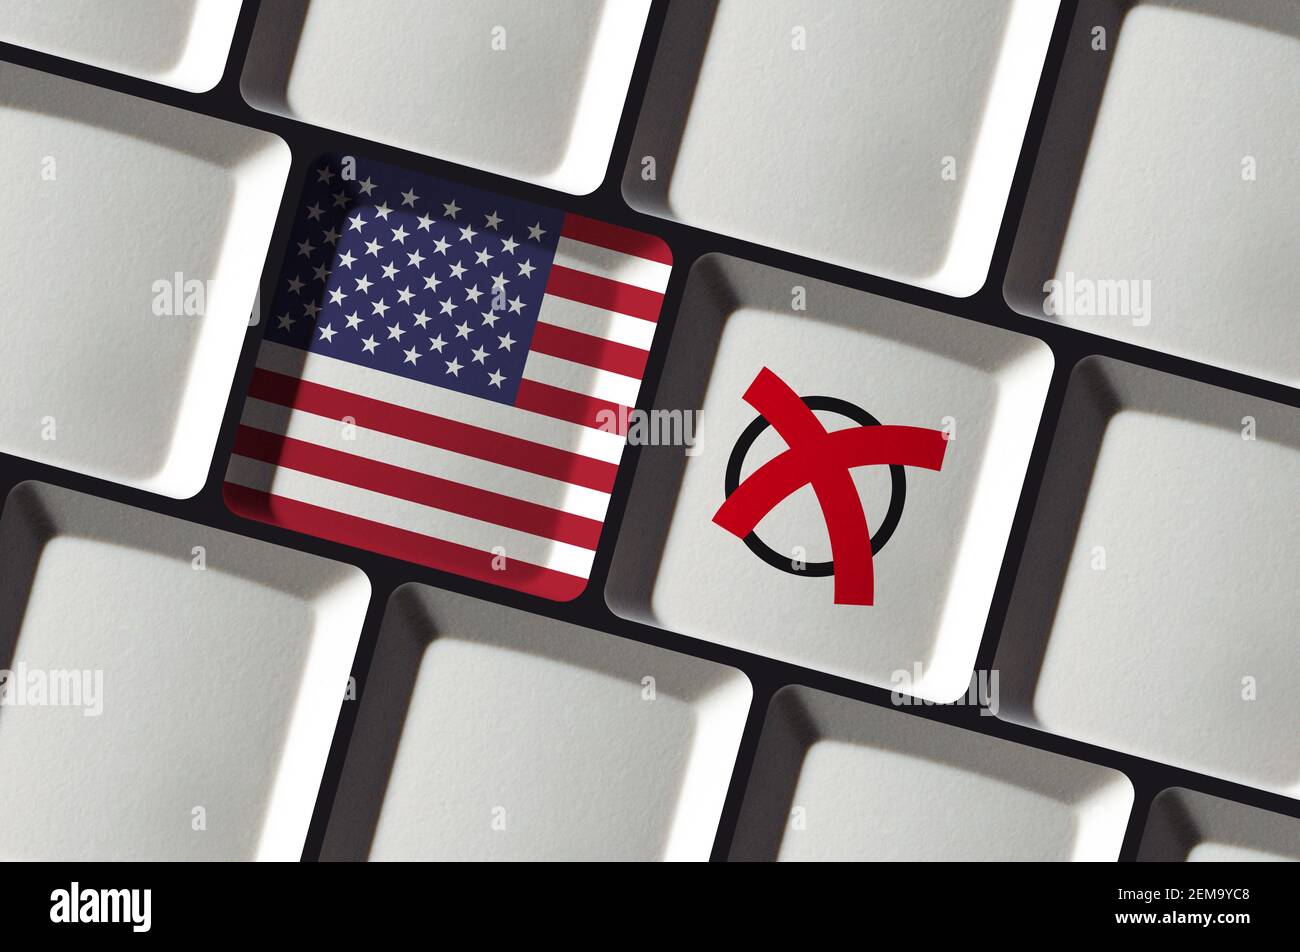 Elezioni online o referendum negli Stati Uniti - bandiera americana su tastiera del computer Foto Stock